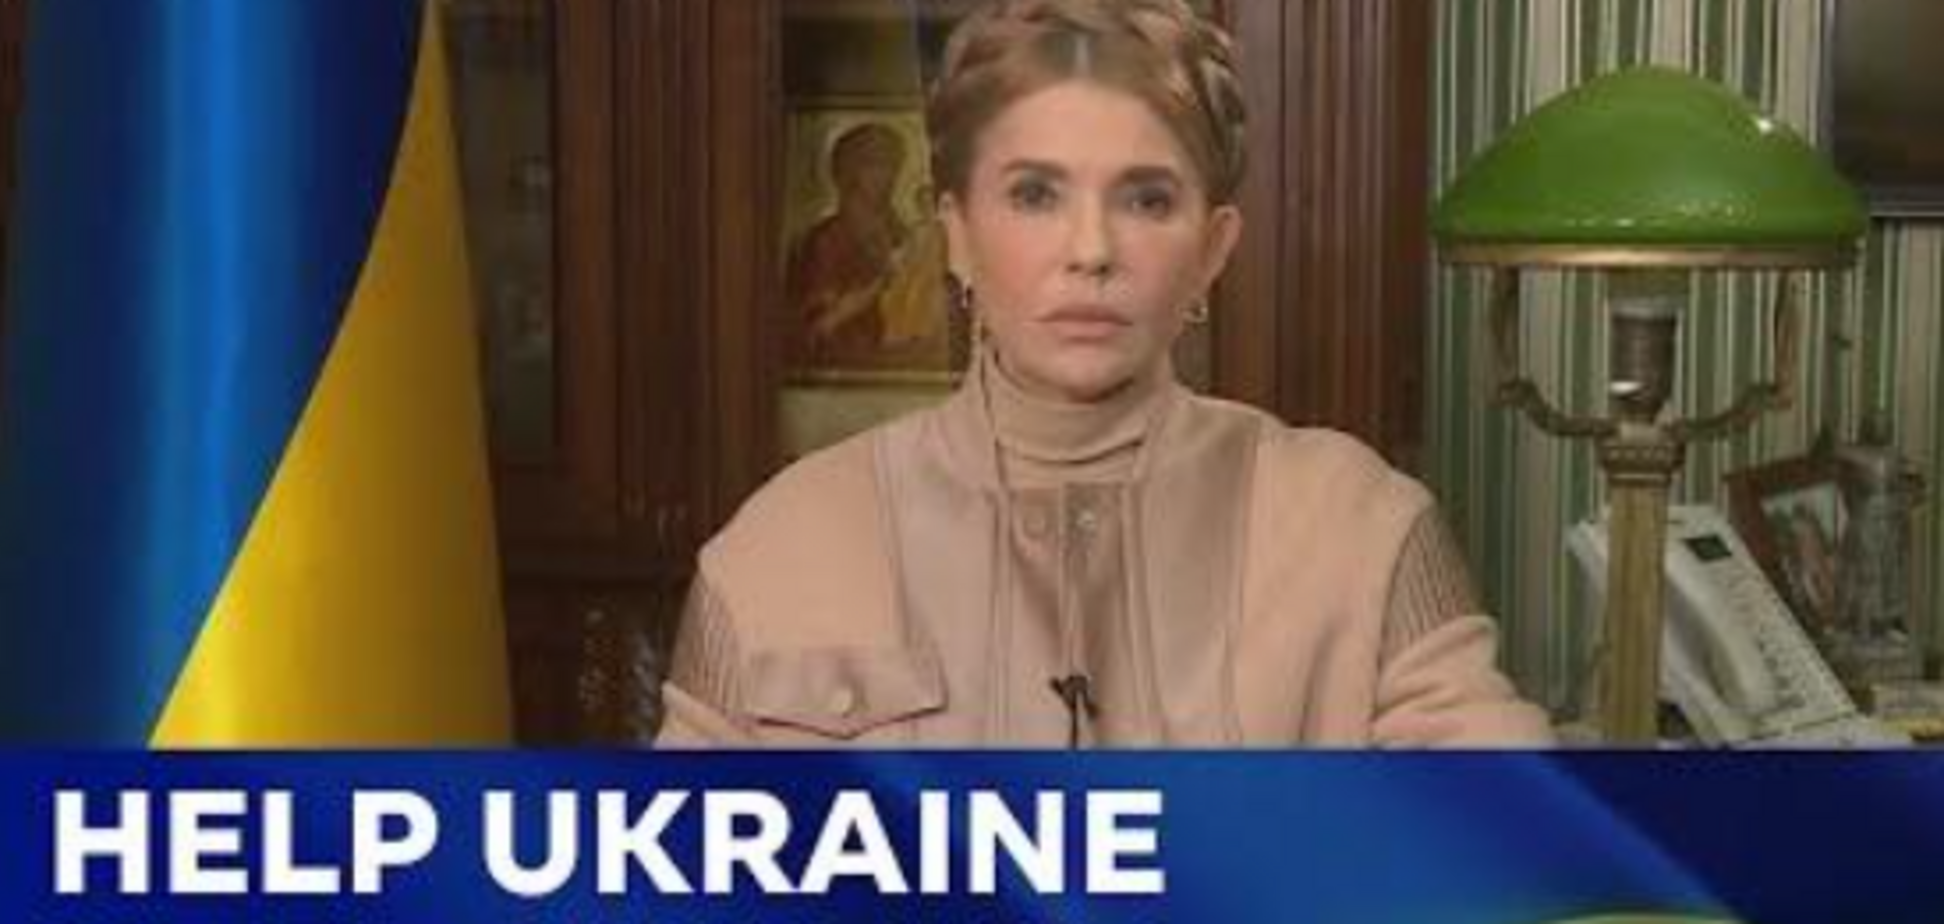 Обращение Юлии Тимошенко к народам, лидерам, парламентам и правительствам мира (in English below)